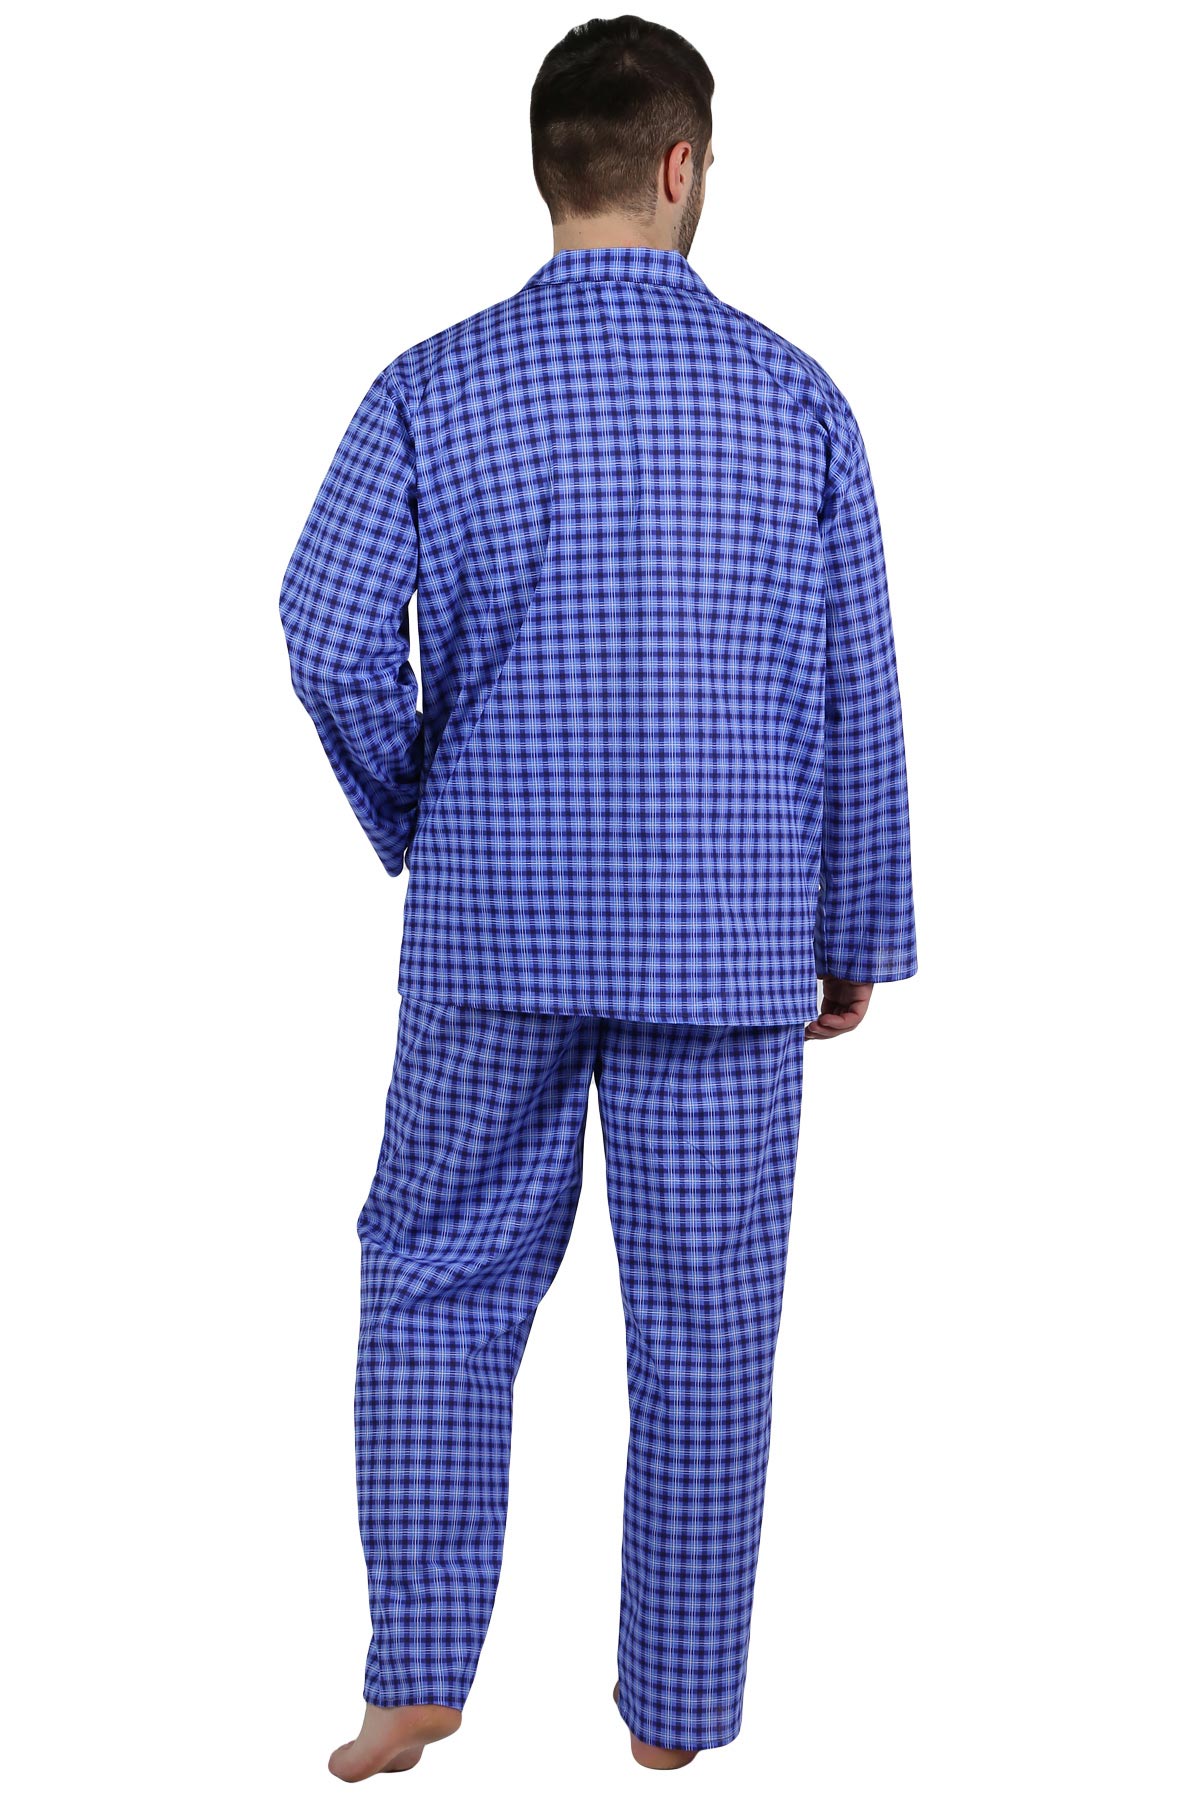 Муж. пижама арт. 22-0210 В ассортименте р. 56 Оптима трикотаж, размер 56 - фото 3